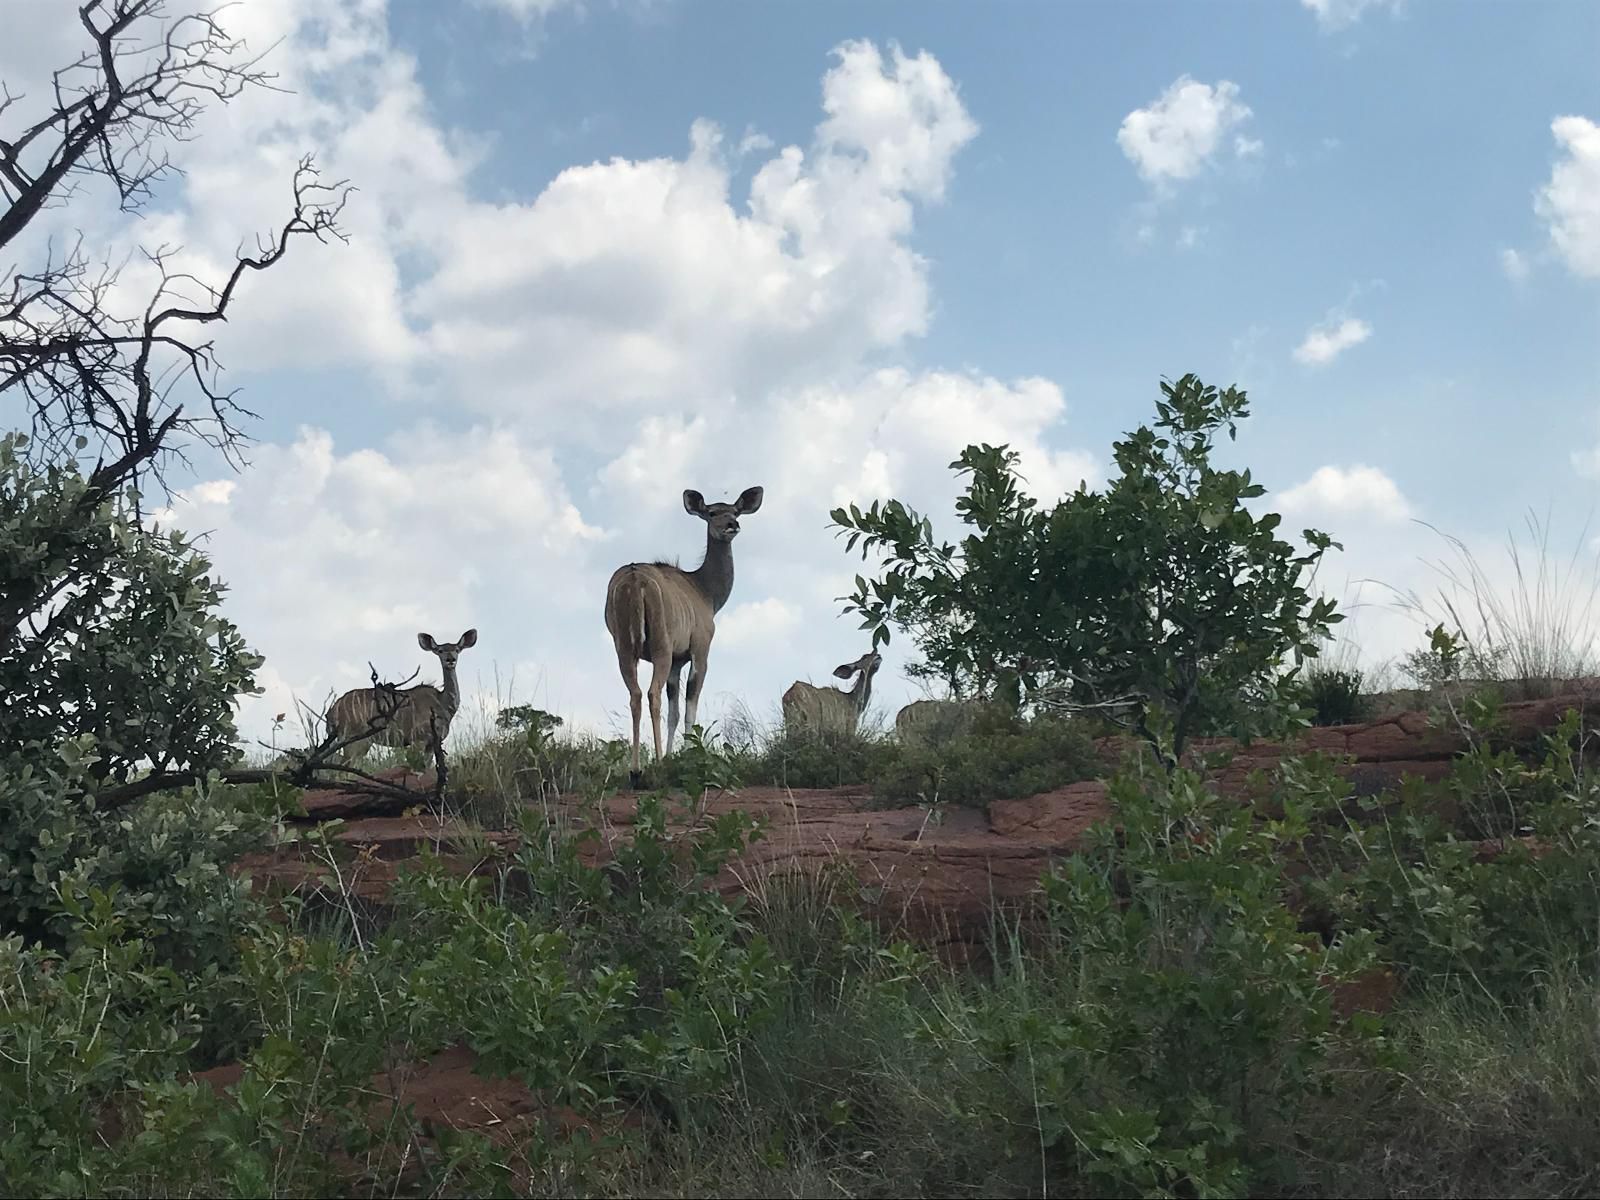 Angel S Rock Bronkhorstspruit Gauteng South Africa Deer, Mammal, Animal, Herbivore